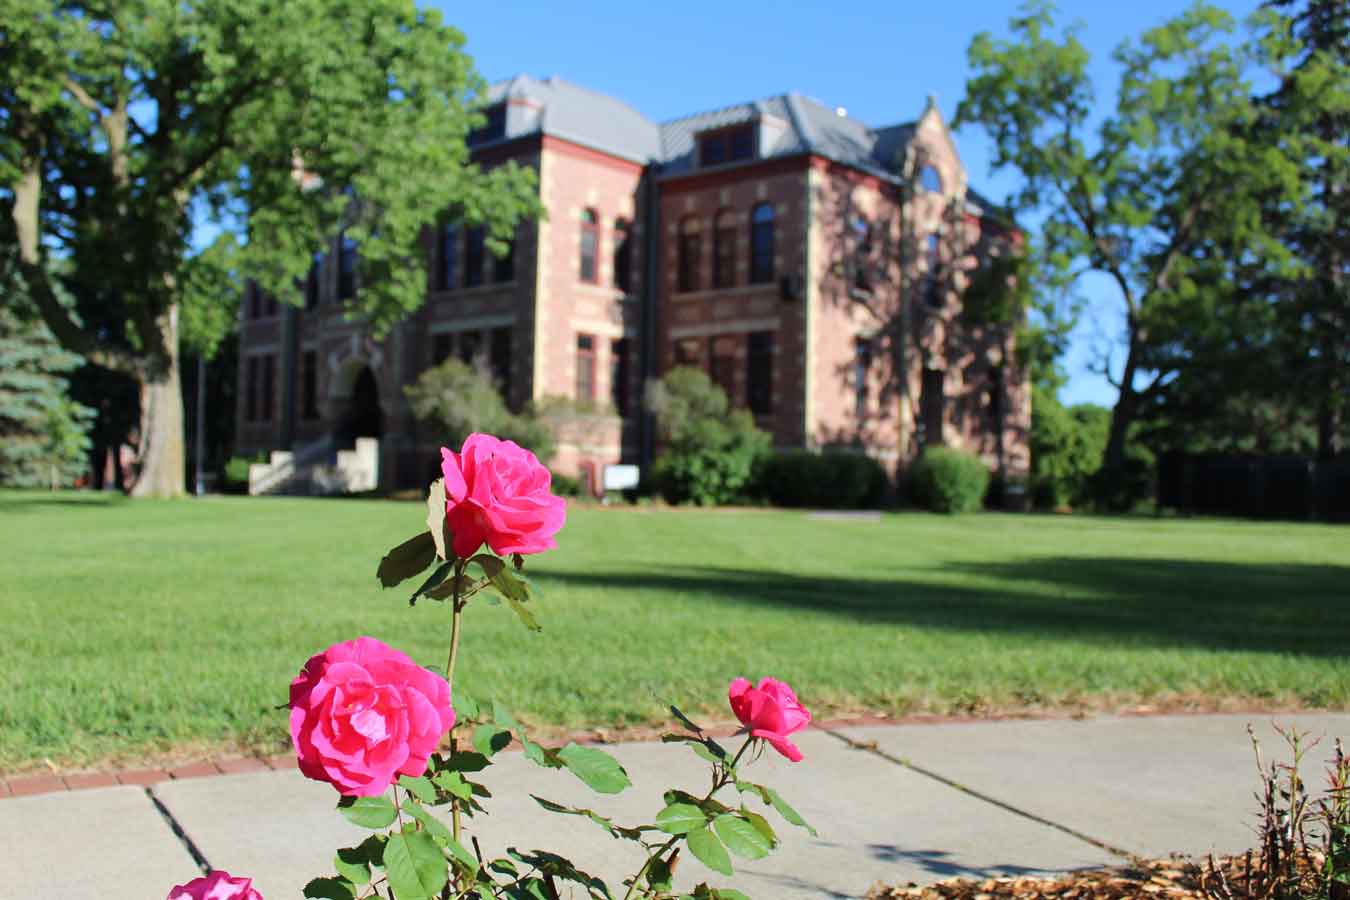 Rose garden on DSU's campus